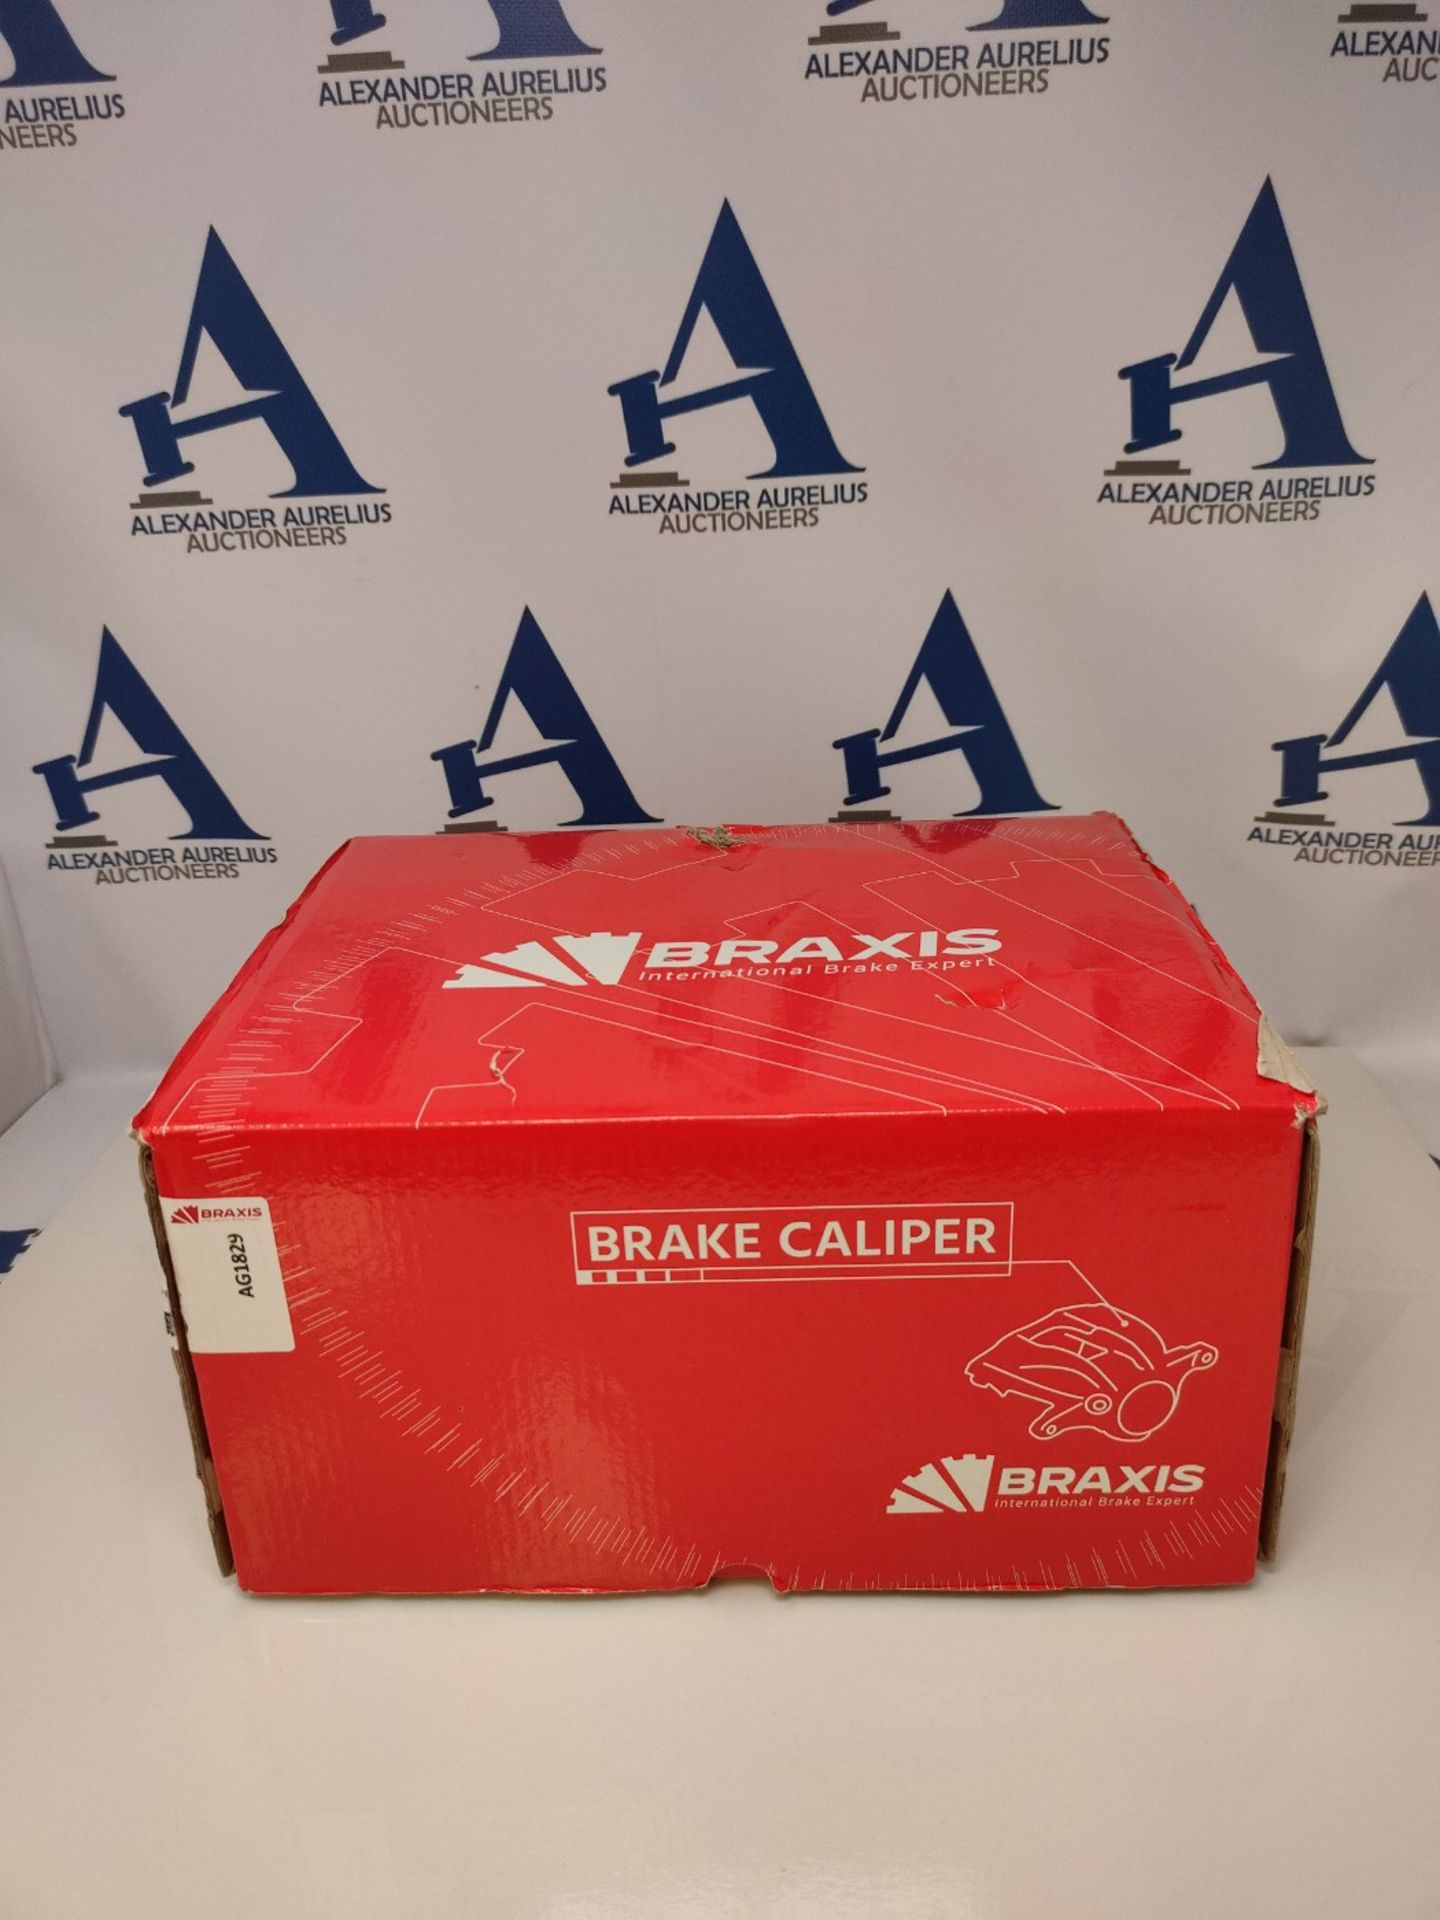 BRAXIS AG1829 Brake calliper, Set of 50 - Image 2 of 3